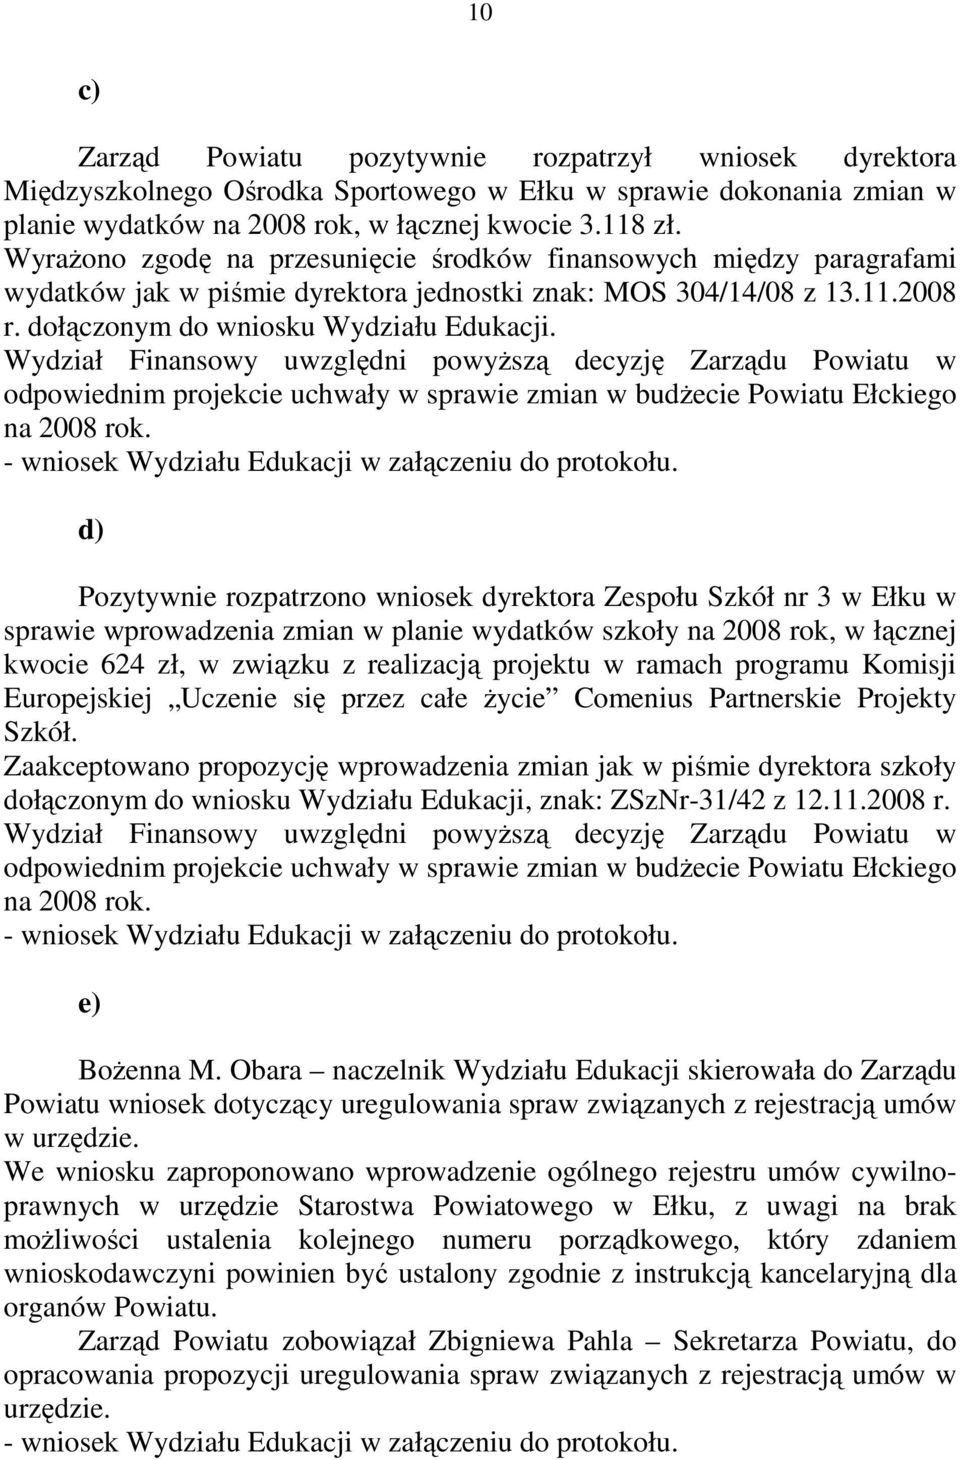 Wydział Finansowy uwzględni powyŝszą decyzję Zarządu Powiatu w odpowiednim projekcie uchwały w sprawie zmian w budŝecie Powiatu Ełckiego na 2008 rok.